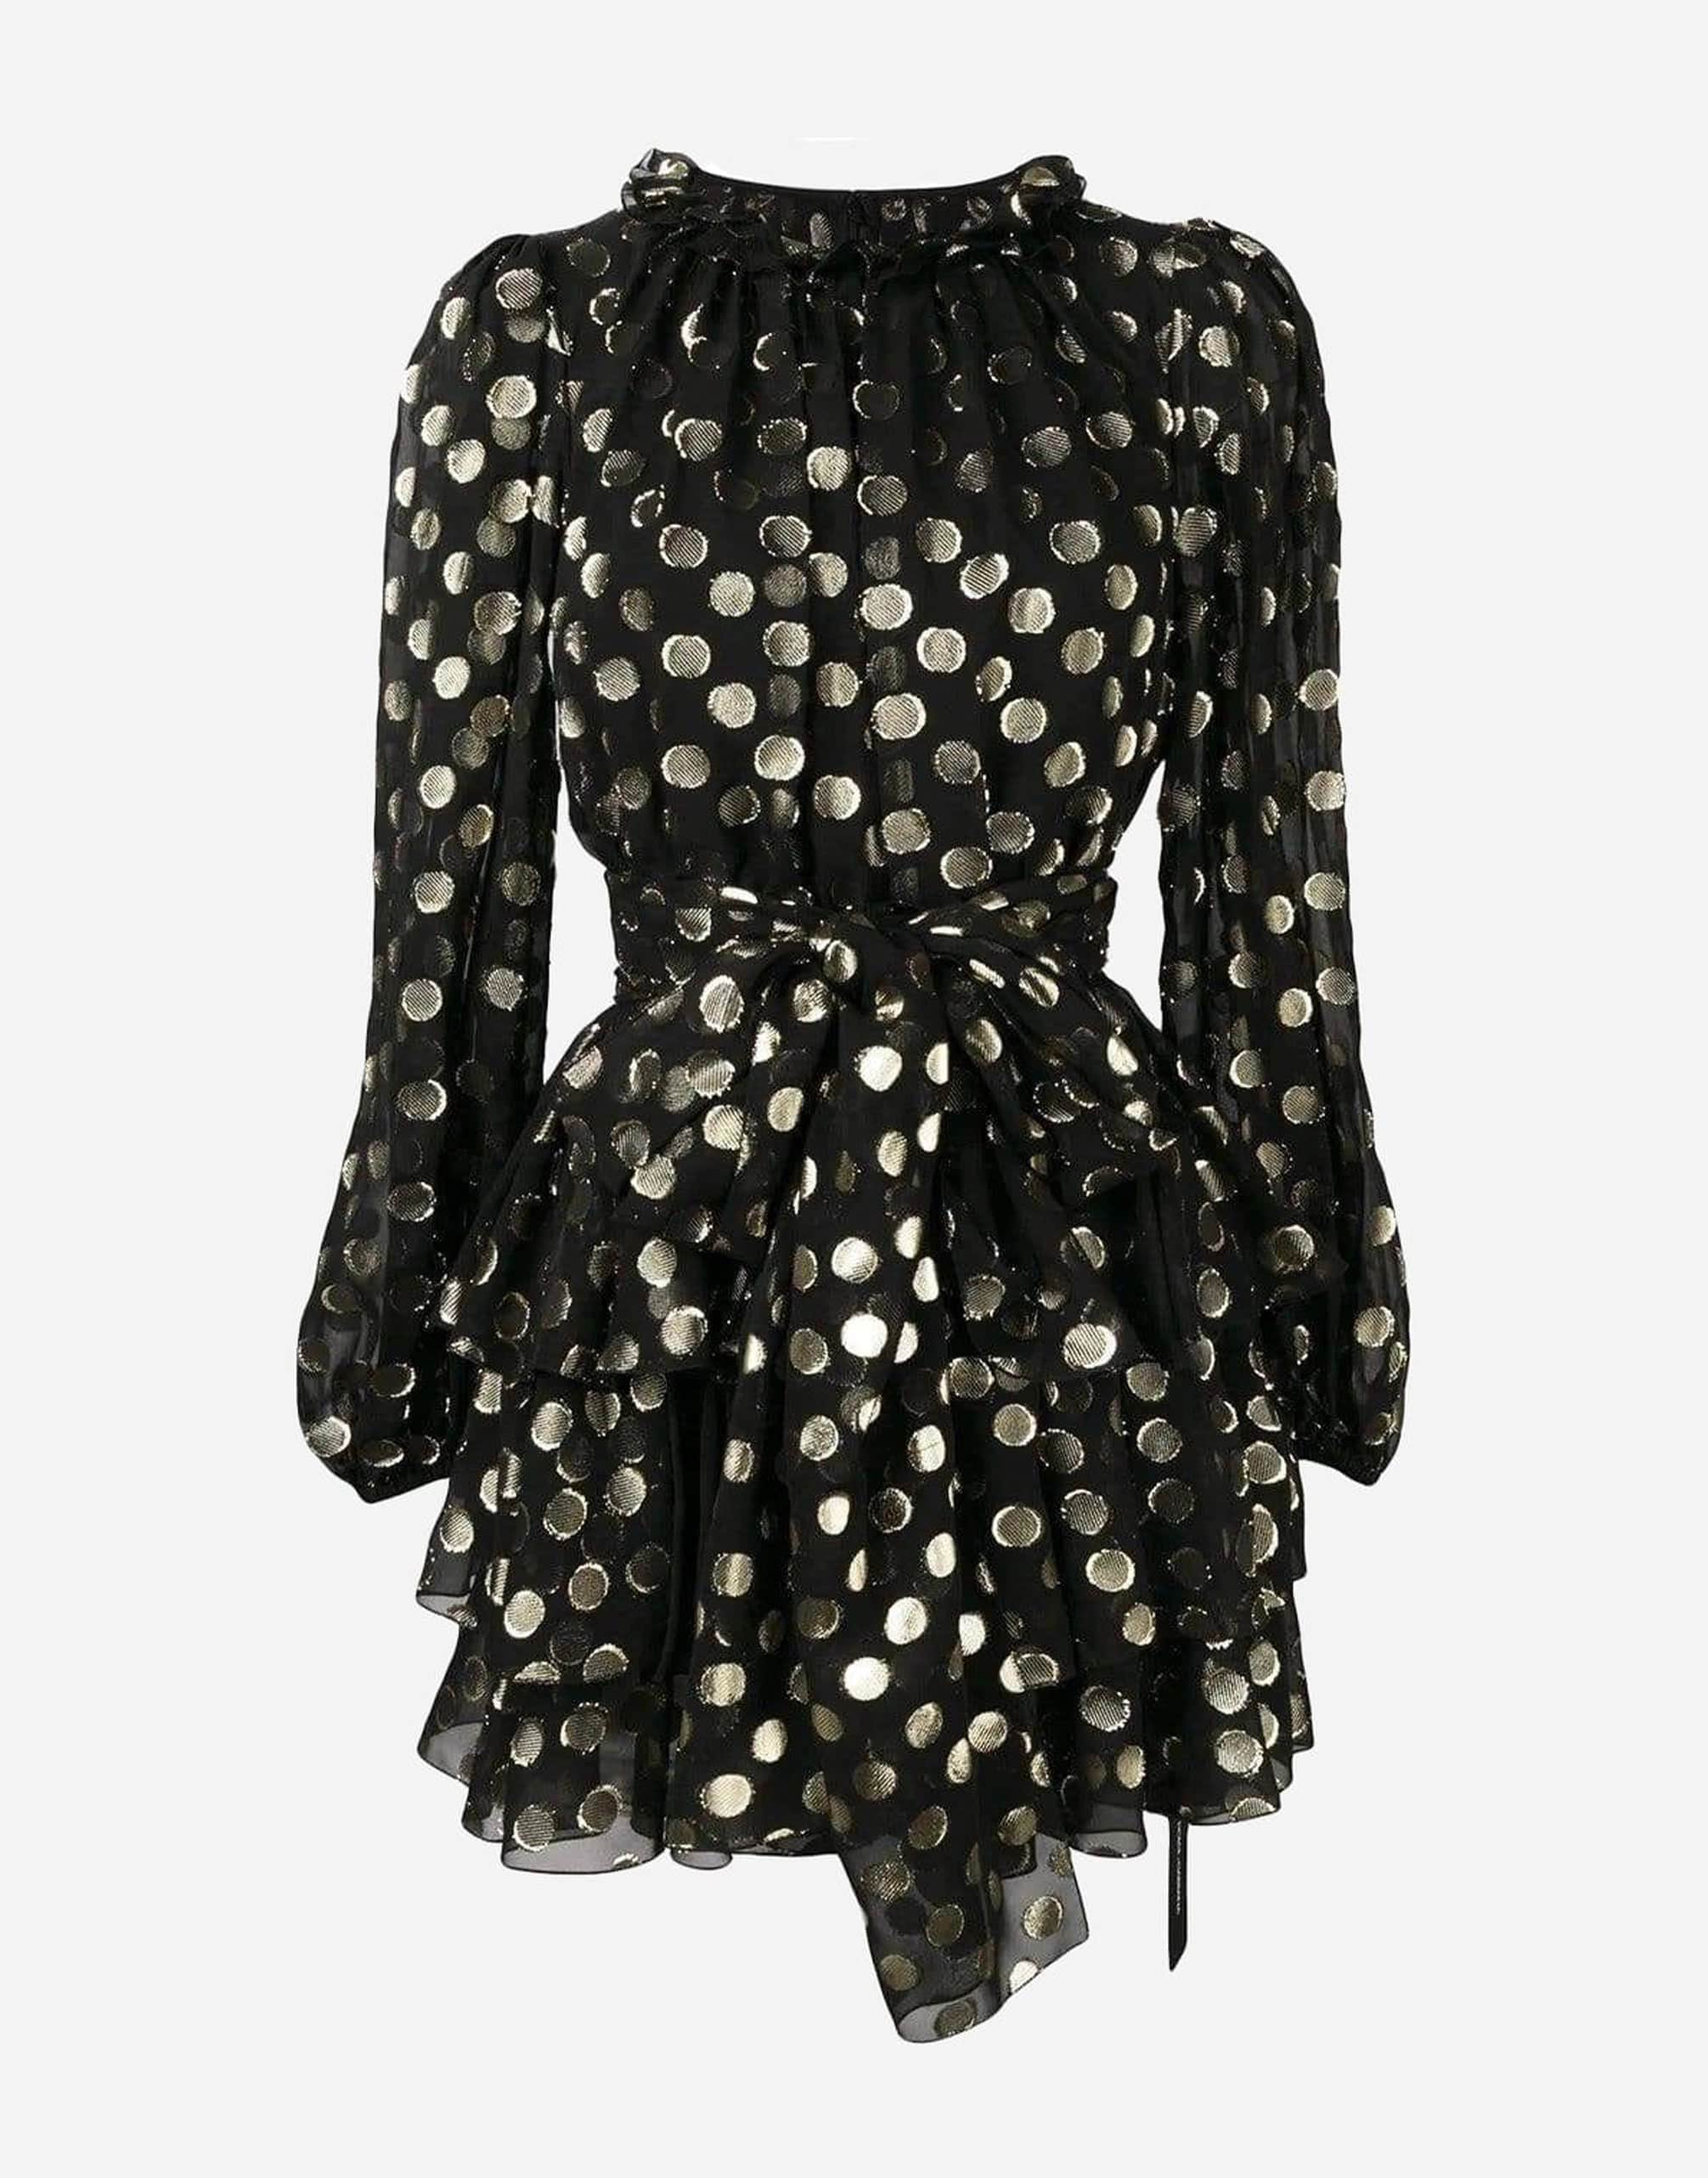 Dolce & Gabbana Polka-Dot Tier Mini Dress